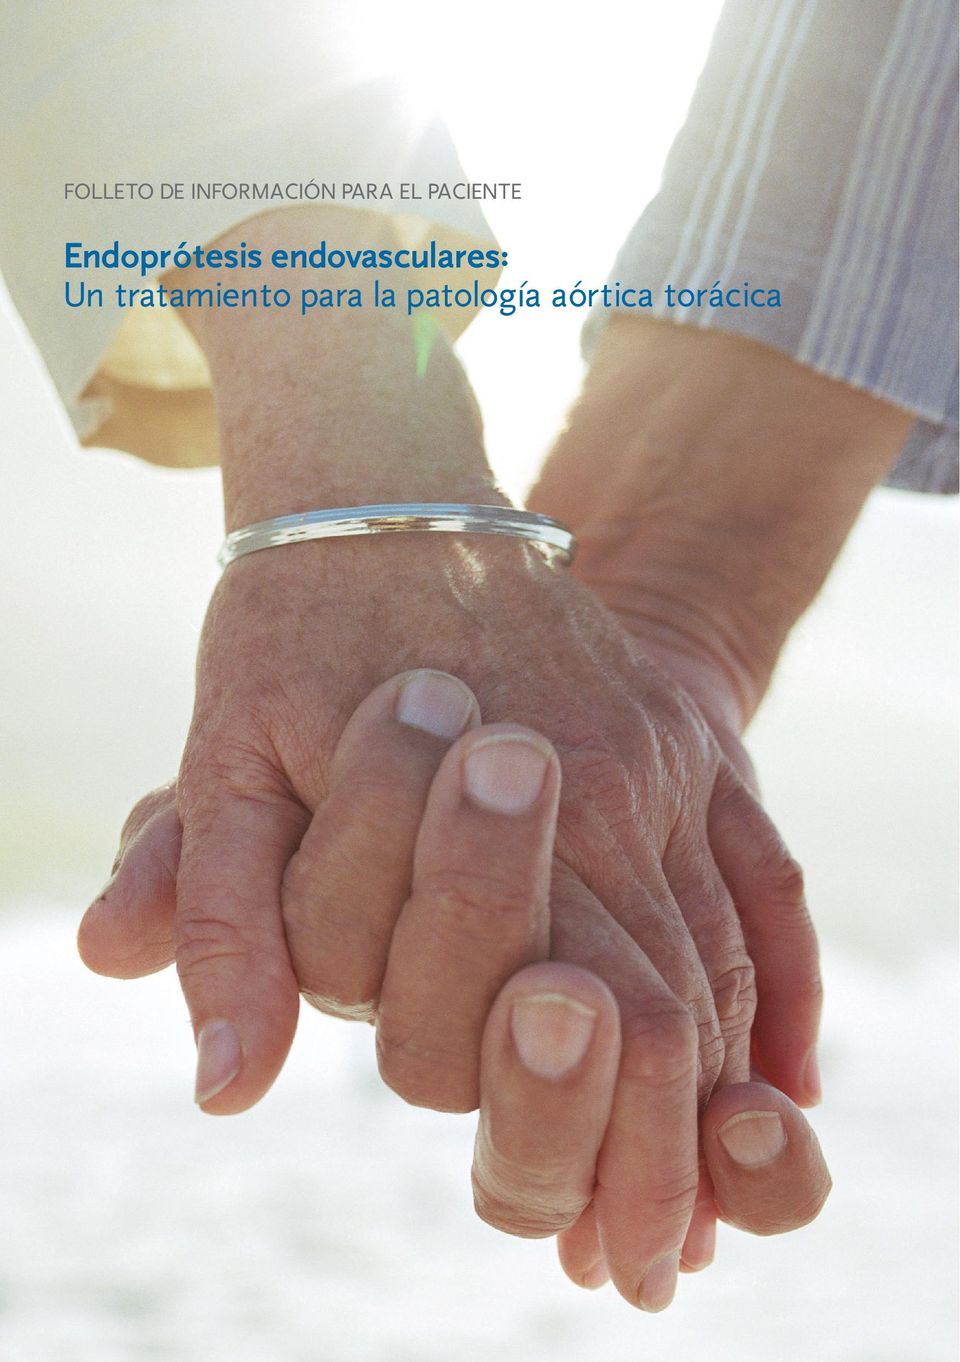 endovasculares: Un